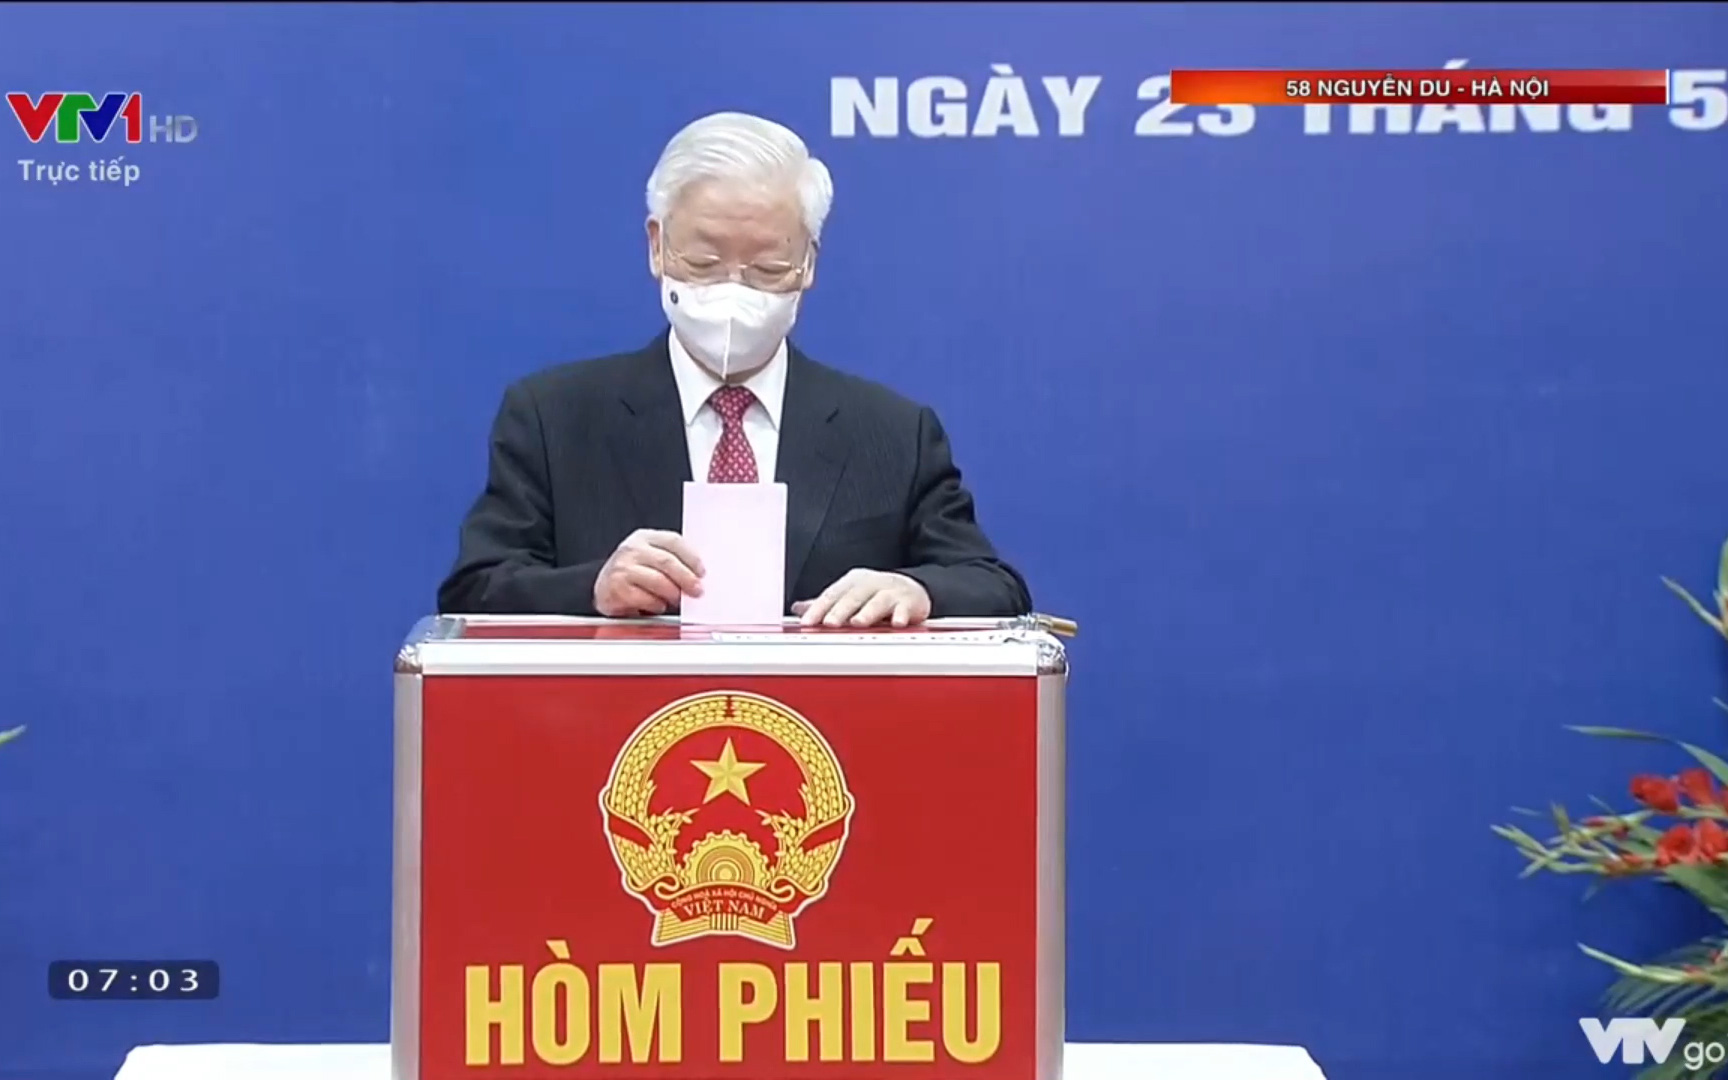 Video: Tổng Bí thư Nguyễn Phú Trọng bỏ lá phiếu bầu cử tại Hà Nội